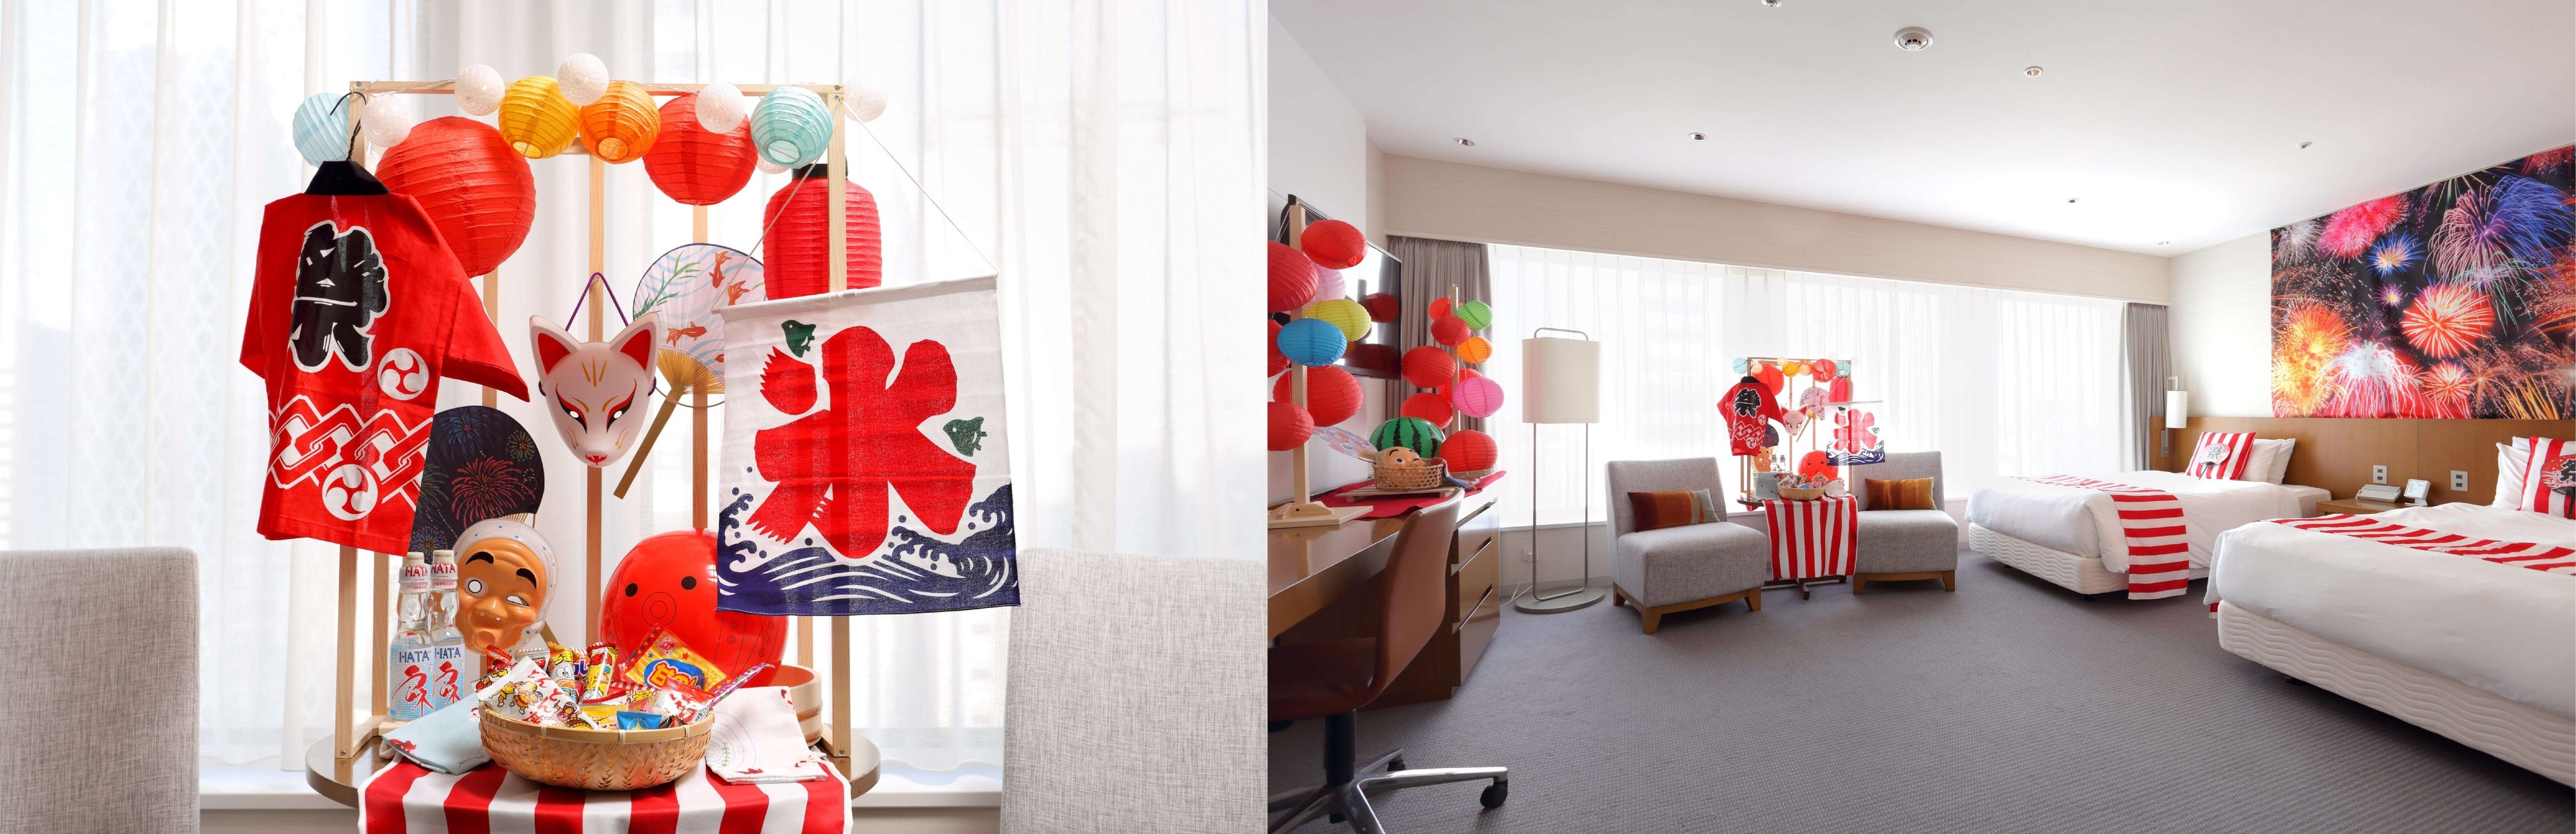 新宿が一望できる47階SKY PLAZA IBASHO で暑い夏でも涼しい室内で夏の風物詩を楽しめる「ぷらざ de 縁日」を...